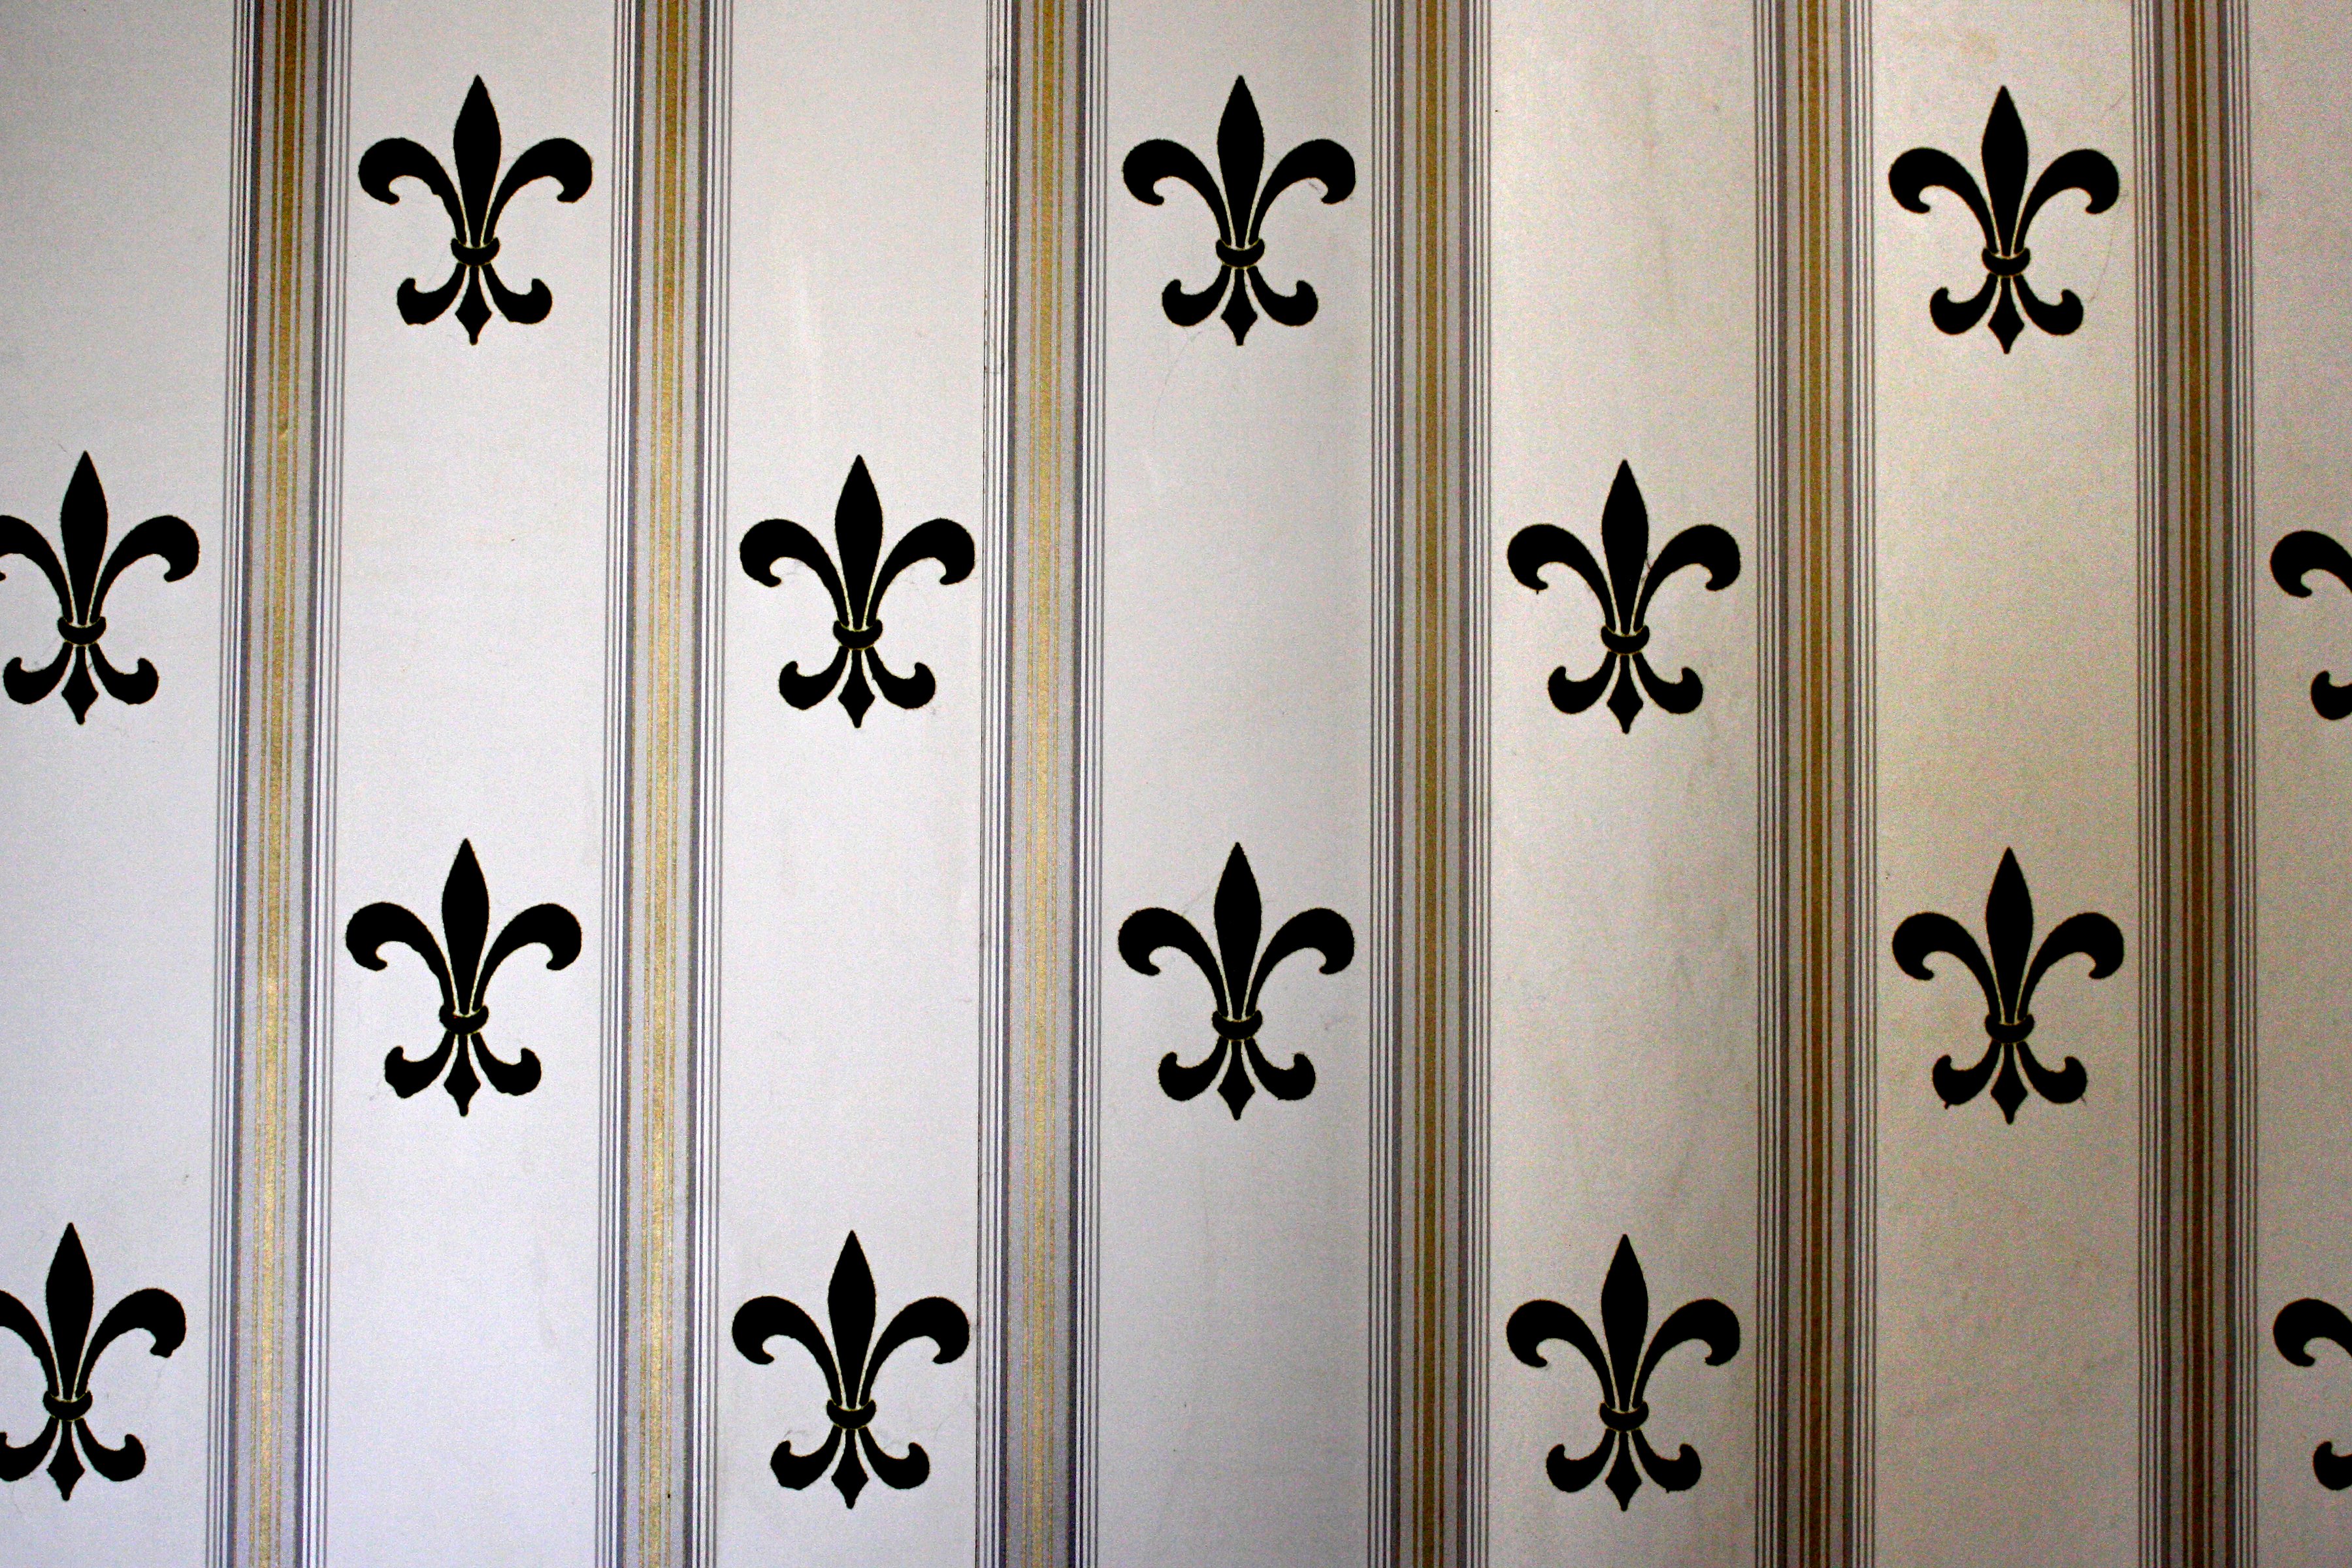 Fleur de lis Wallpaper Texture Picture | Free Photograph | Photos ...